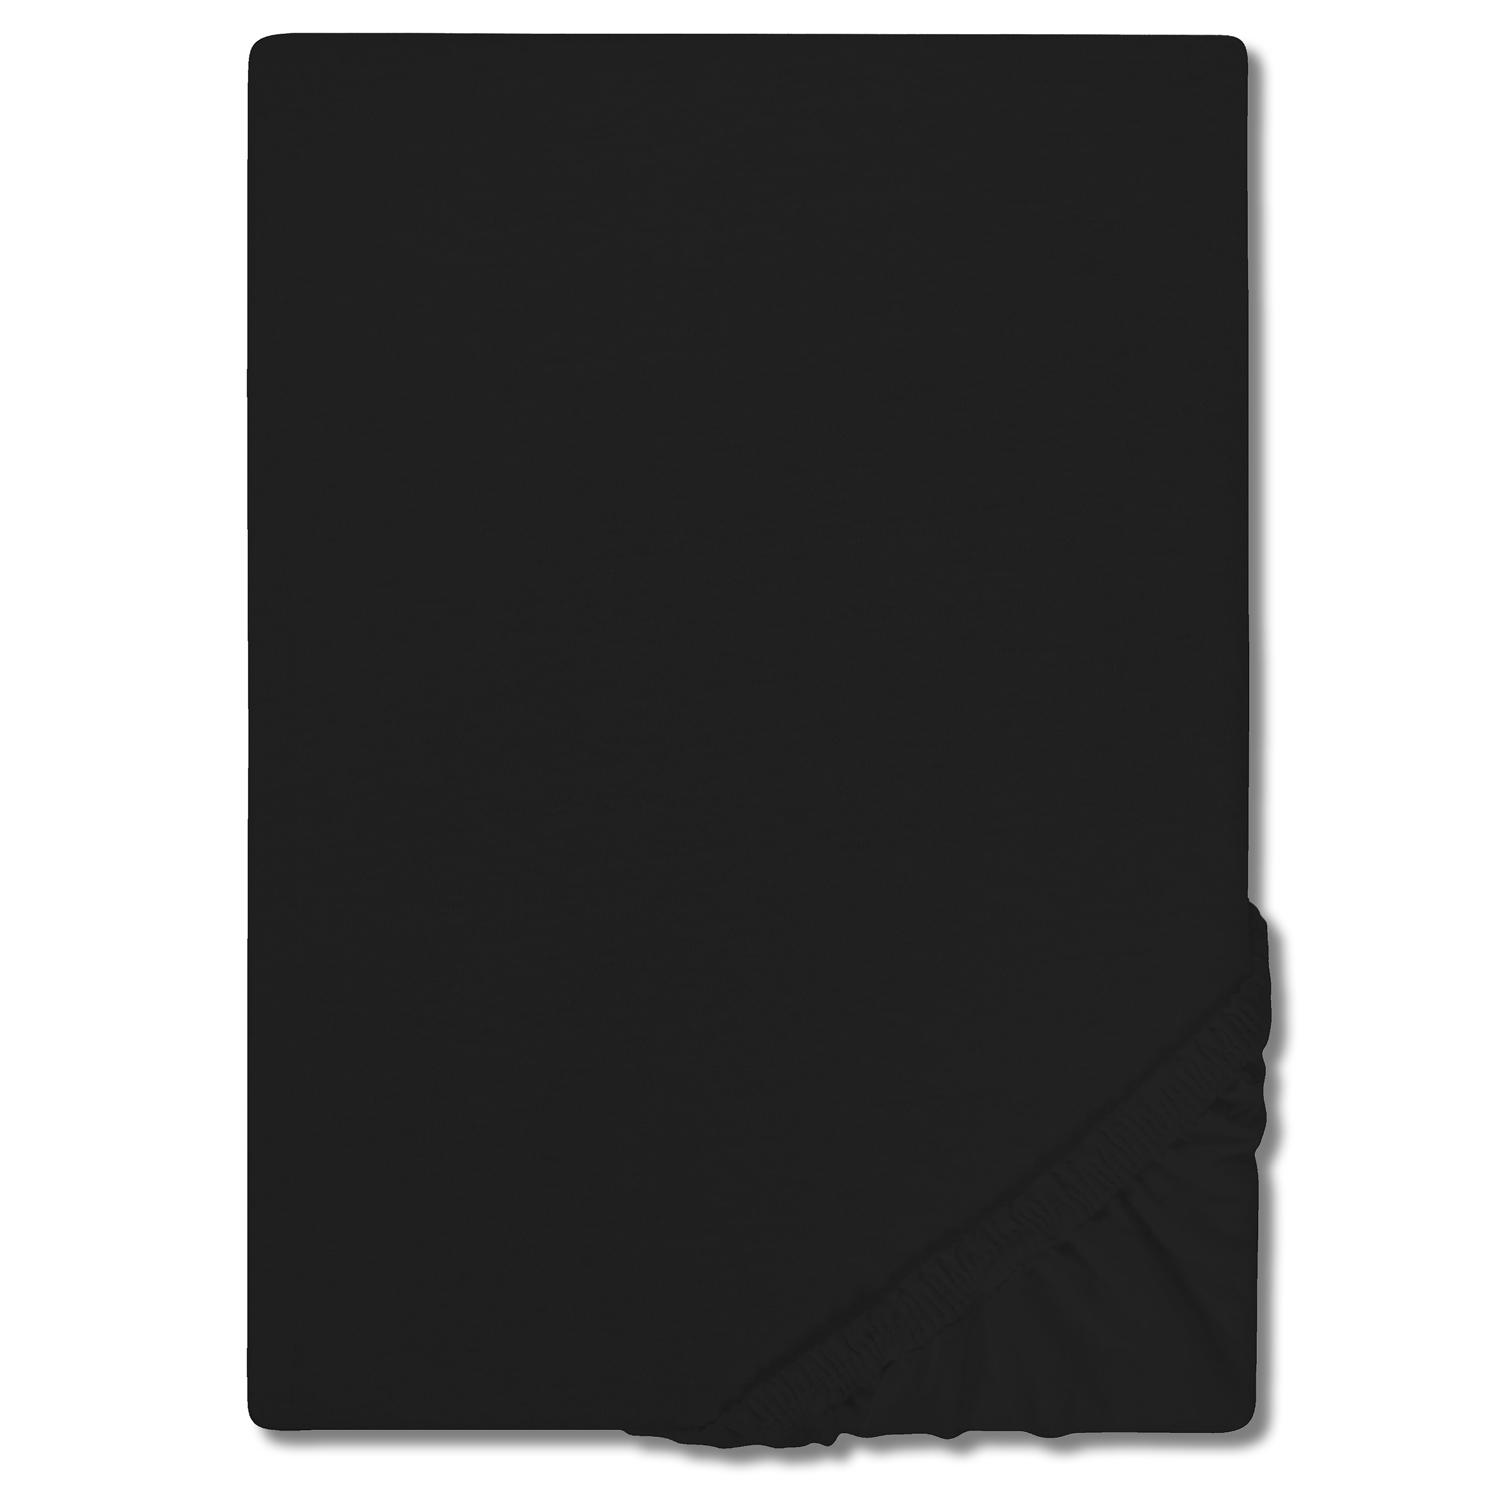 CloudComfort Basic Spannbettlaken Jersey-Stretch schwarz 90 x 190 - 100 x 200 cm